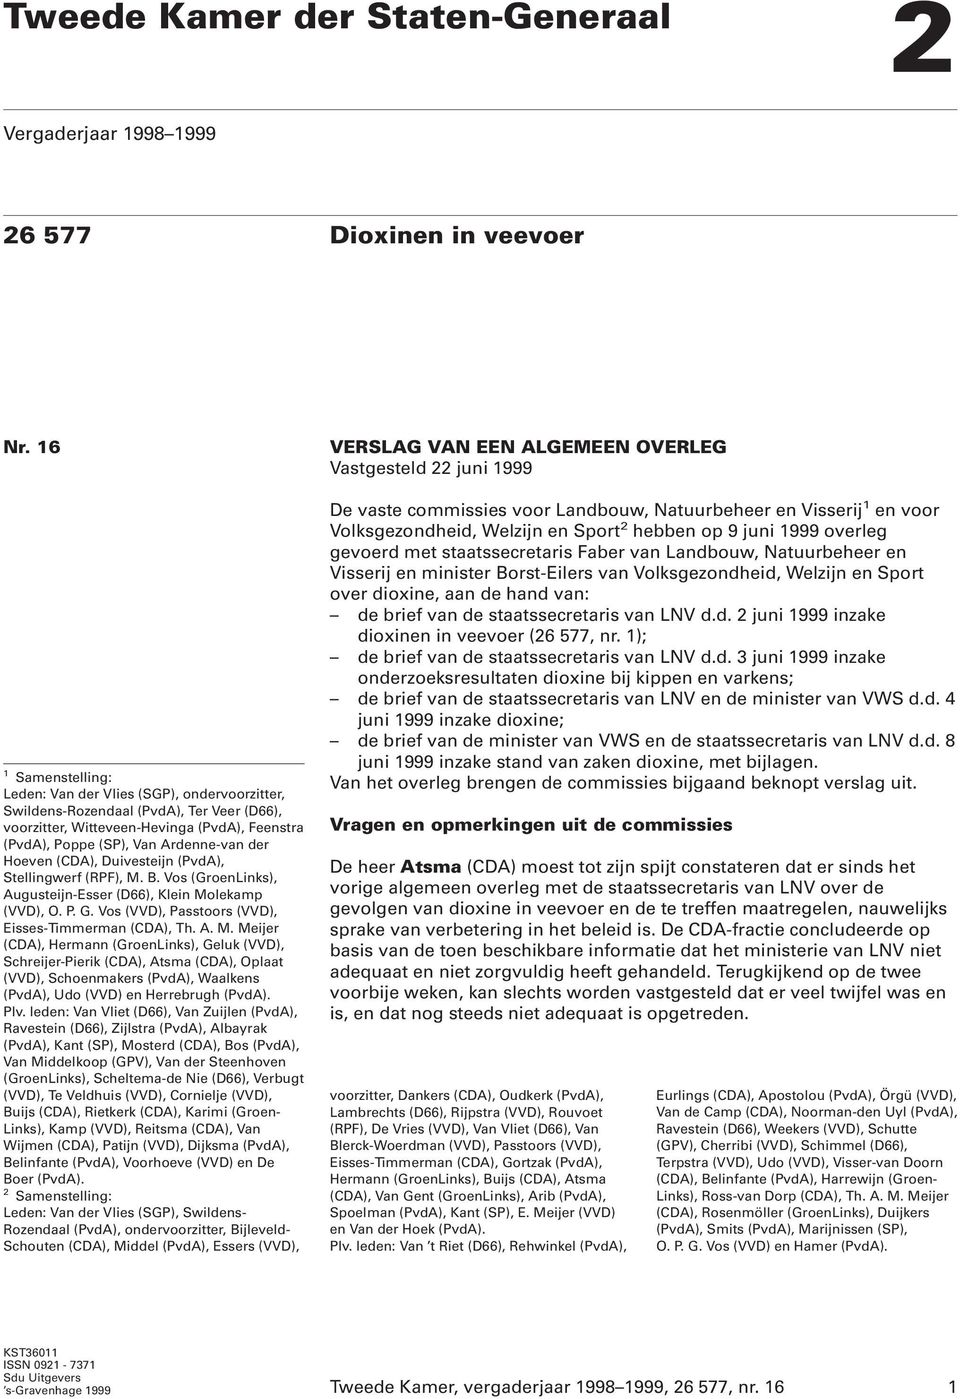 Hoeven (CDA), Duivesteijn (PvdA), Stellingwerf (RPF), M.